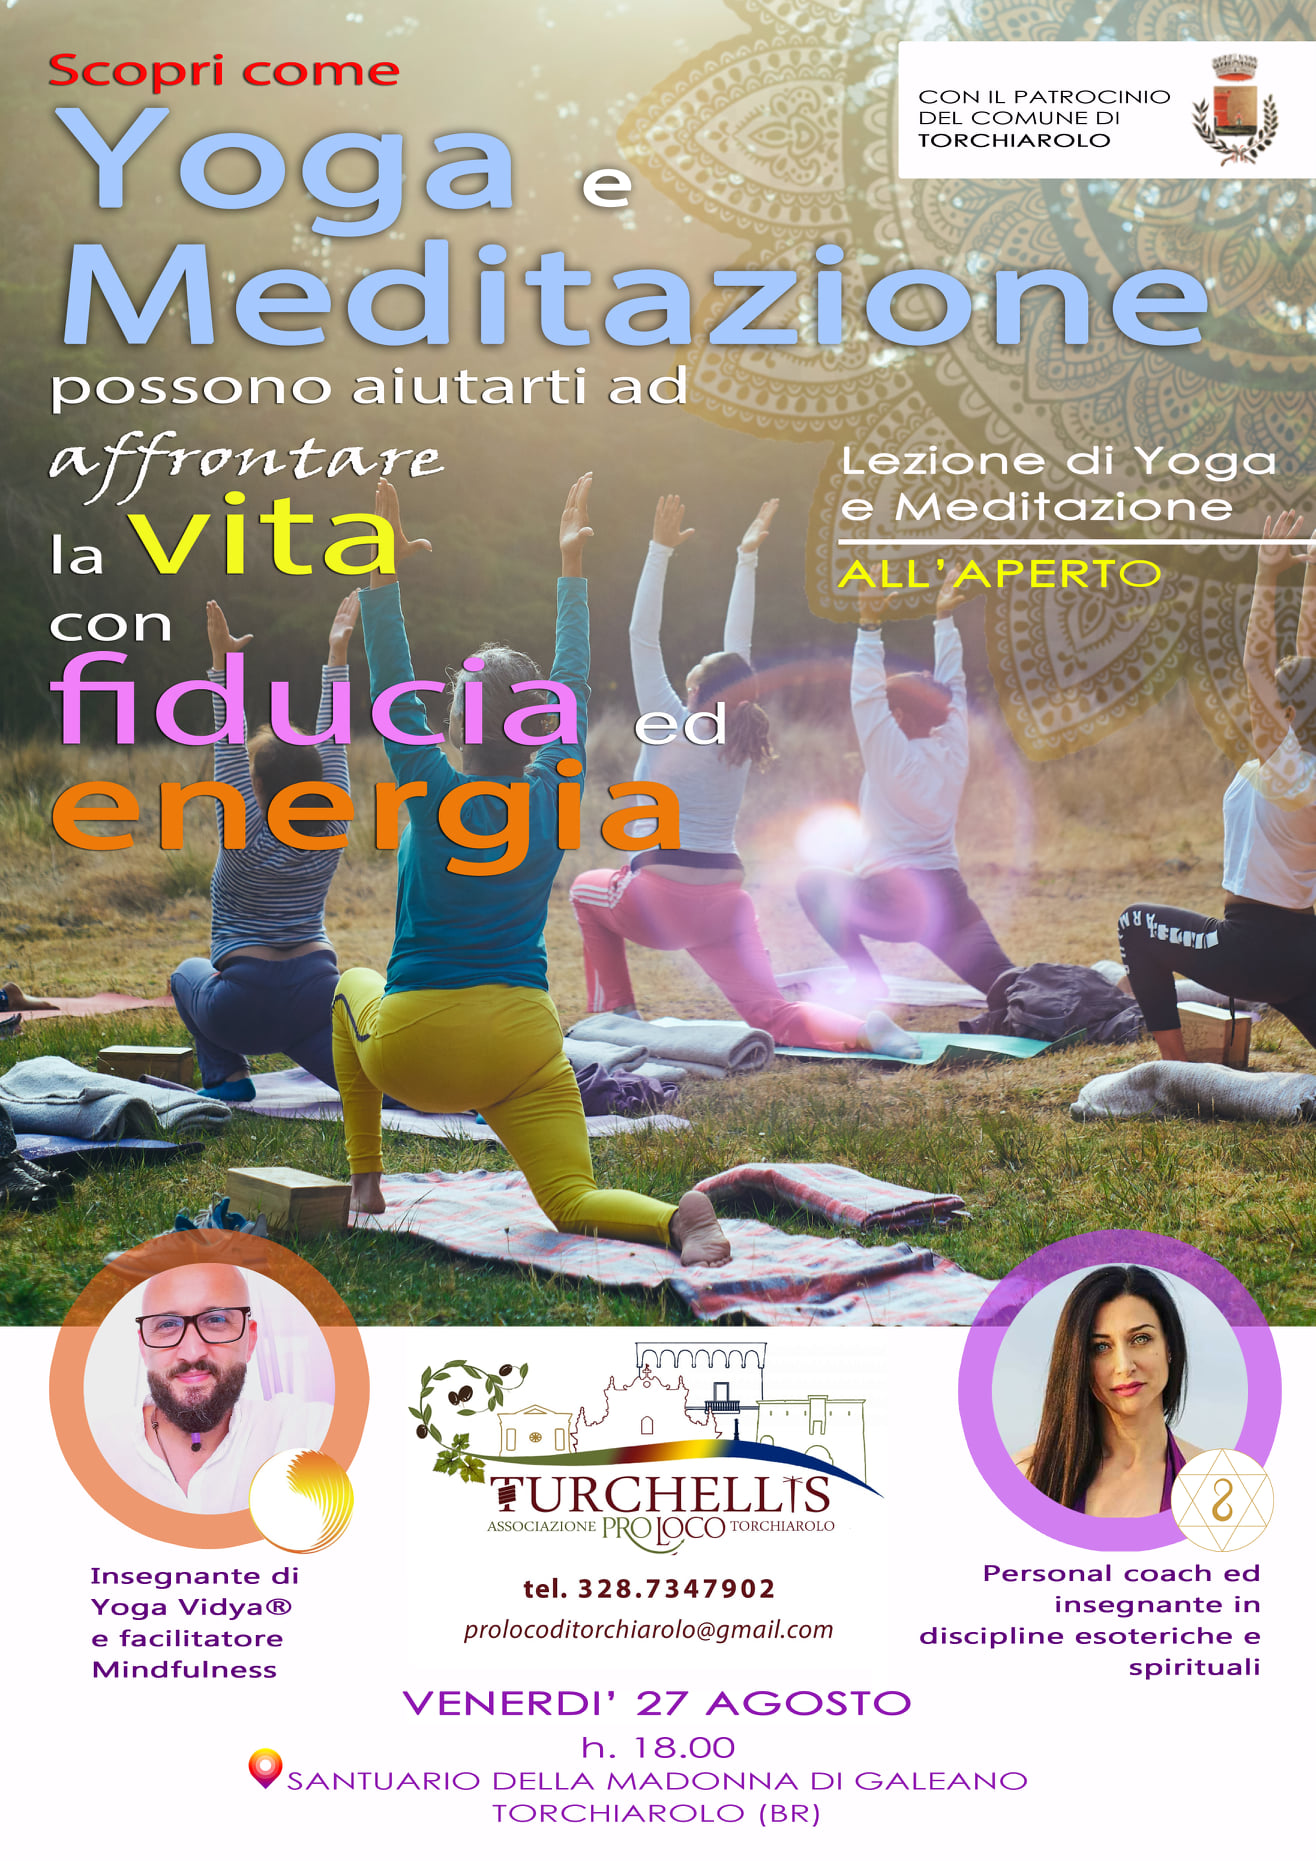 Torchiarolo, venerdì 27 agosto lezione di yoga e meditazione all'aperto